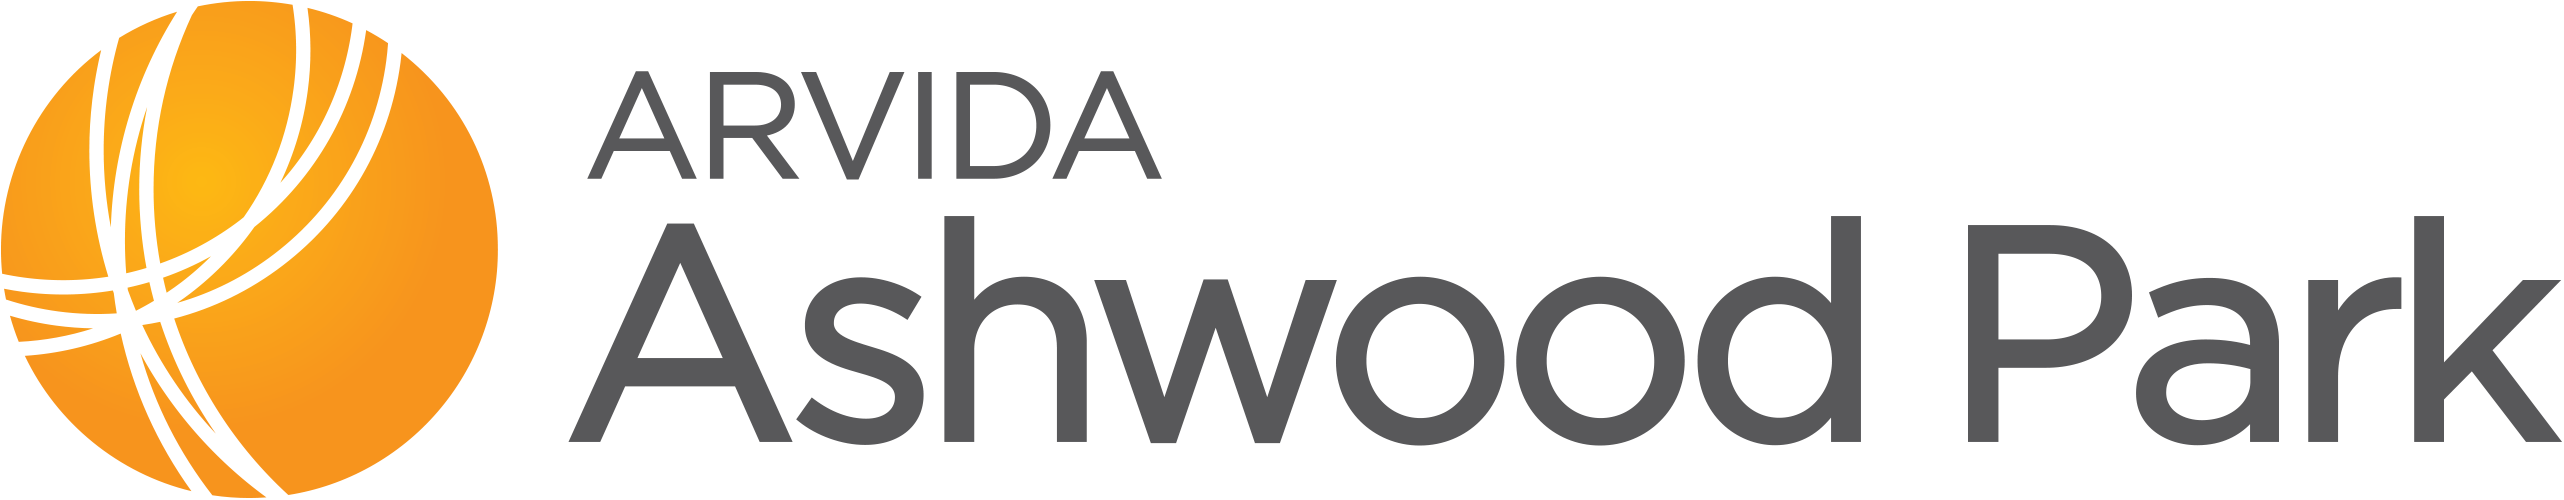 Ashwood Park | Arvida logo